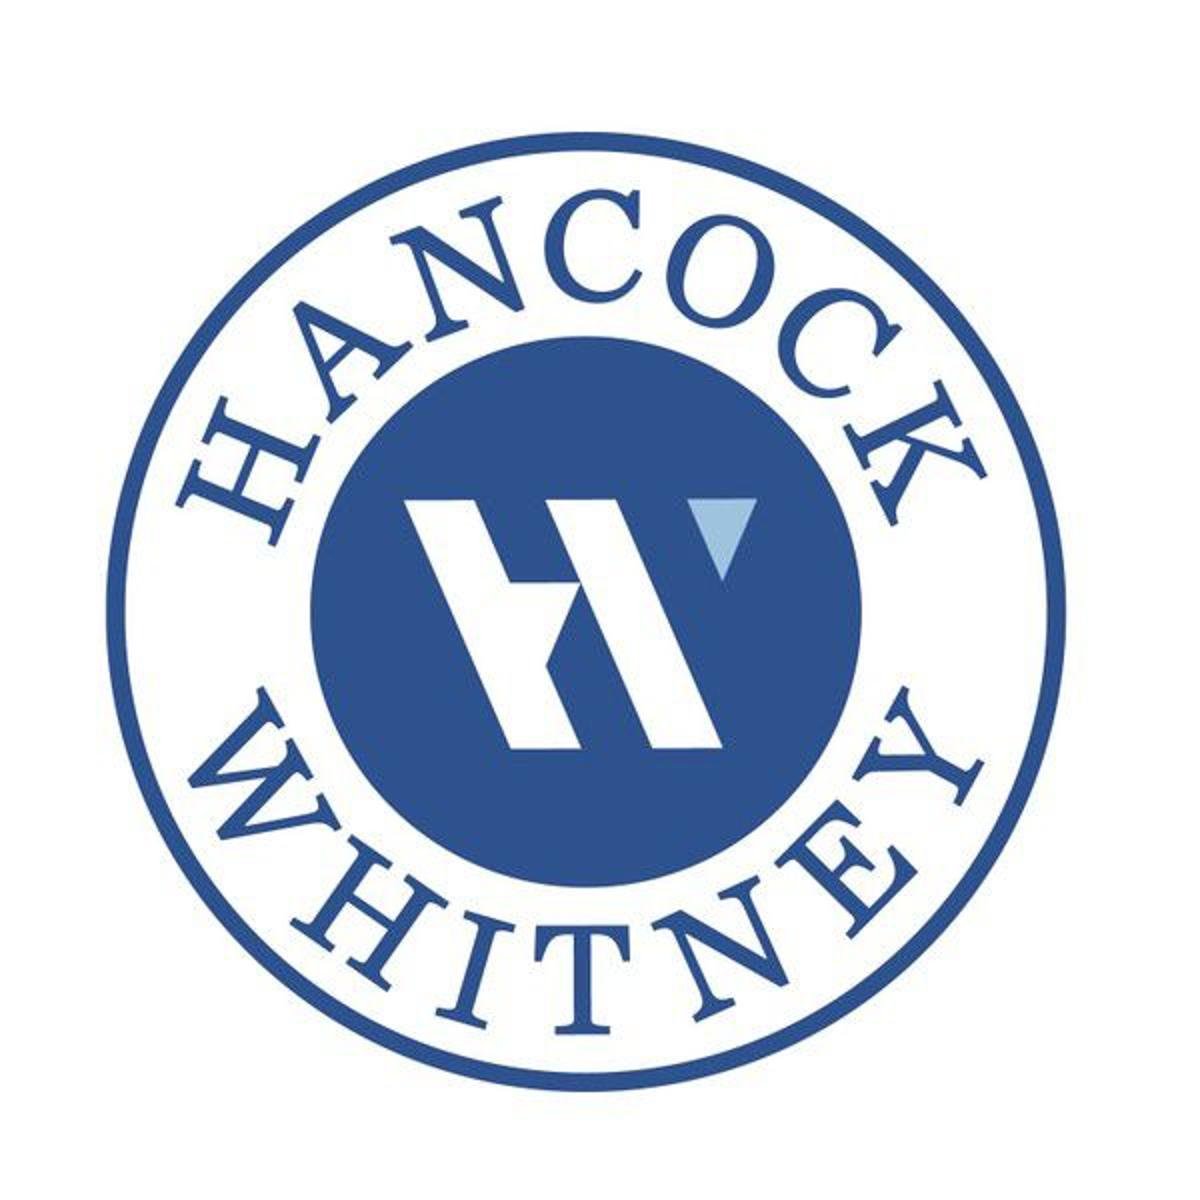 whitney logo